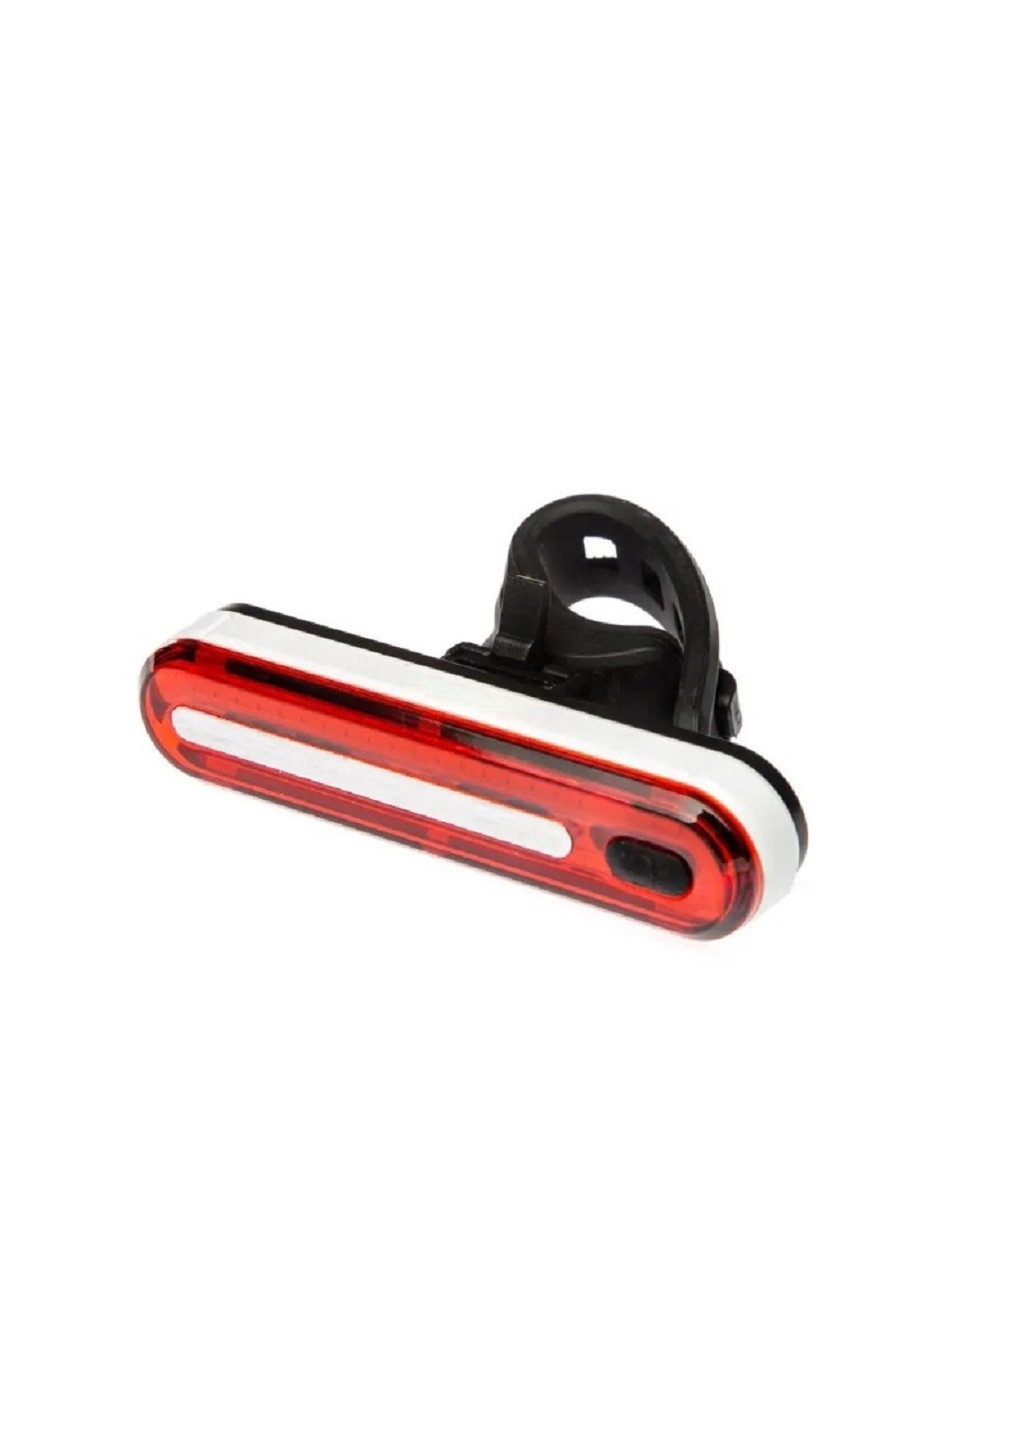 Задний свет для велосипеда освещение фонарь мигалка 8 режимов работы 100 Лм USB влагозащищенный корпус (22401-Нов) Unbranded (253596868)